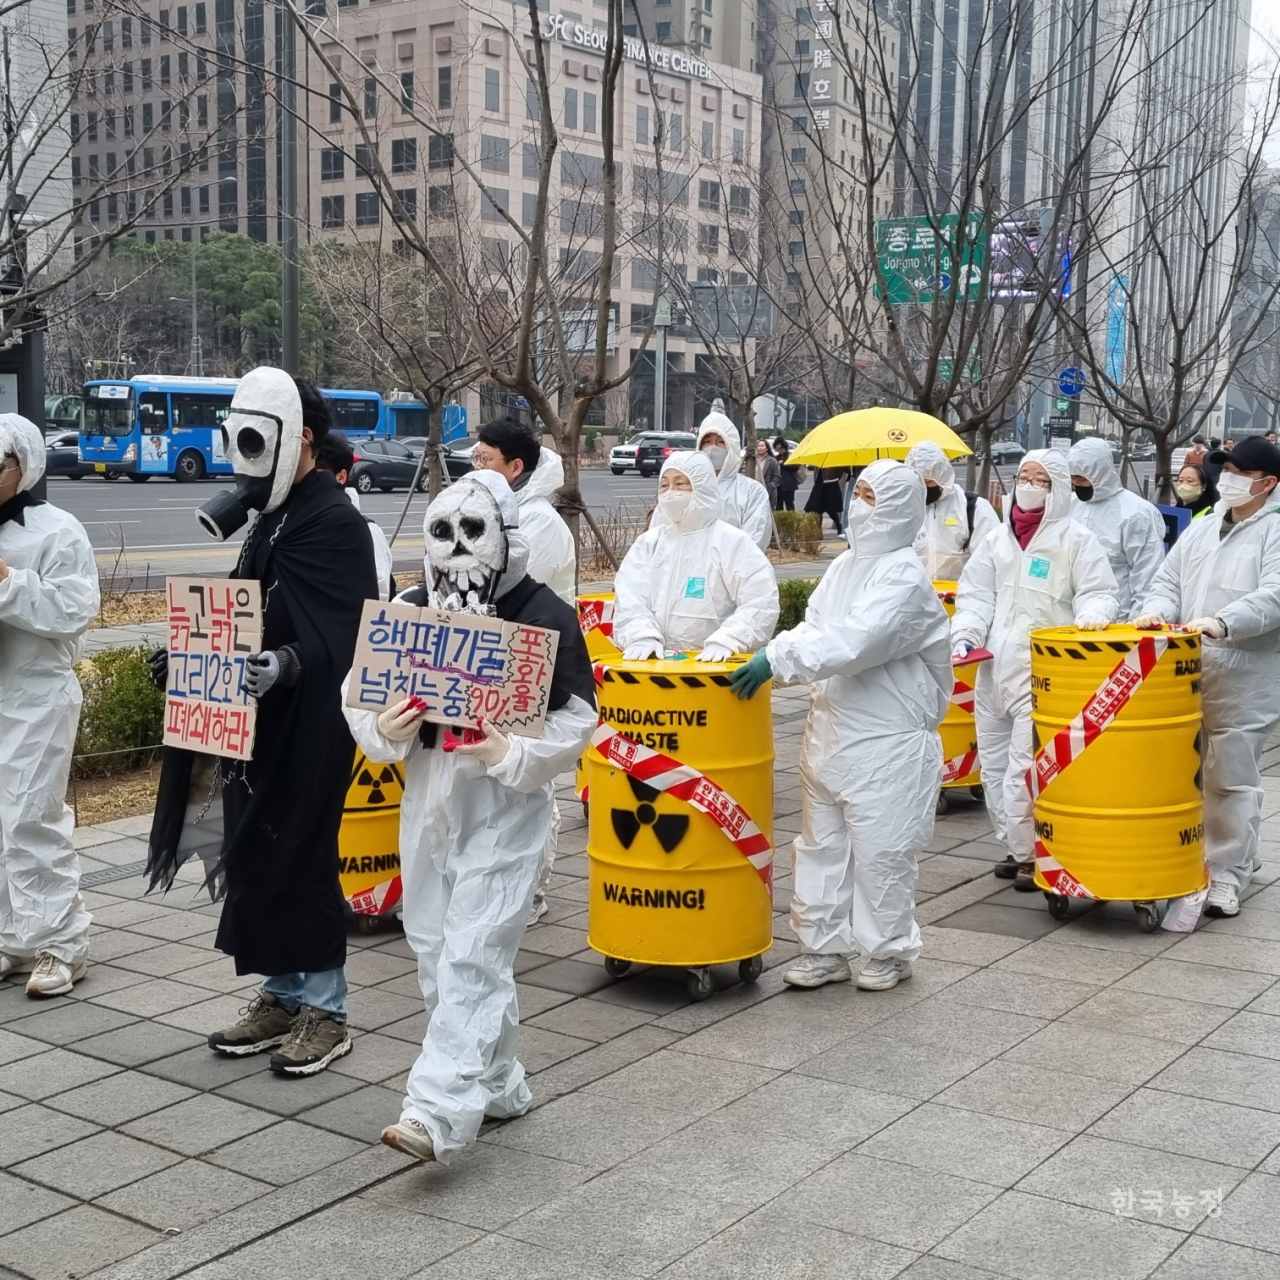 지난 9일 후쿠시마 핵사고 12년 탈핵행진 준비위원회 주최로 서울 도심에서 열린 탈핵행진에 참가한 시민들. 구희현 친환경학교급식경기도운동본부 상임대표 제공